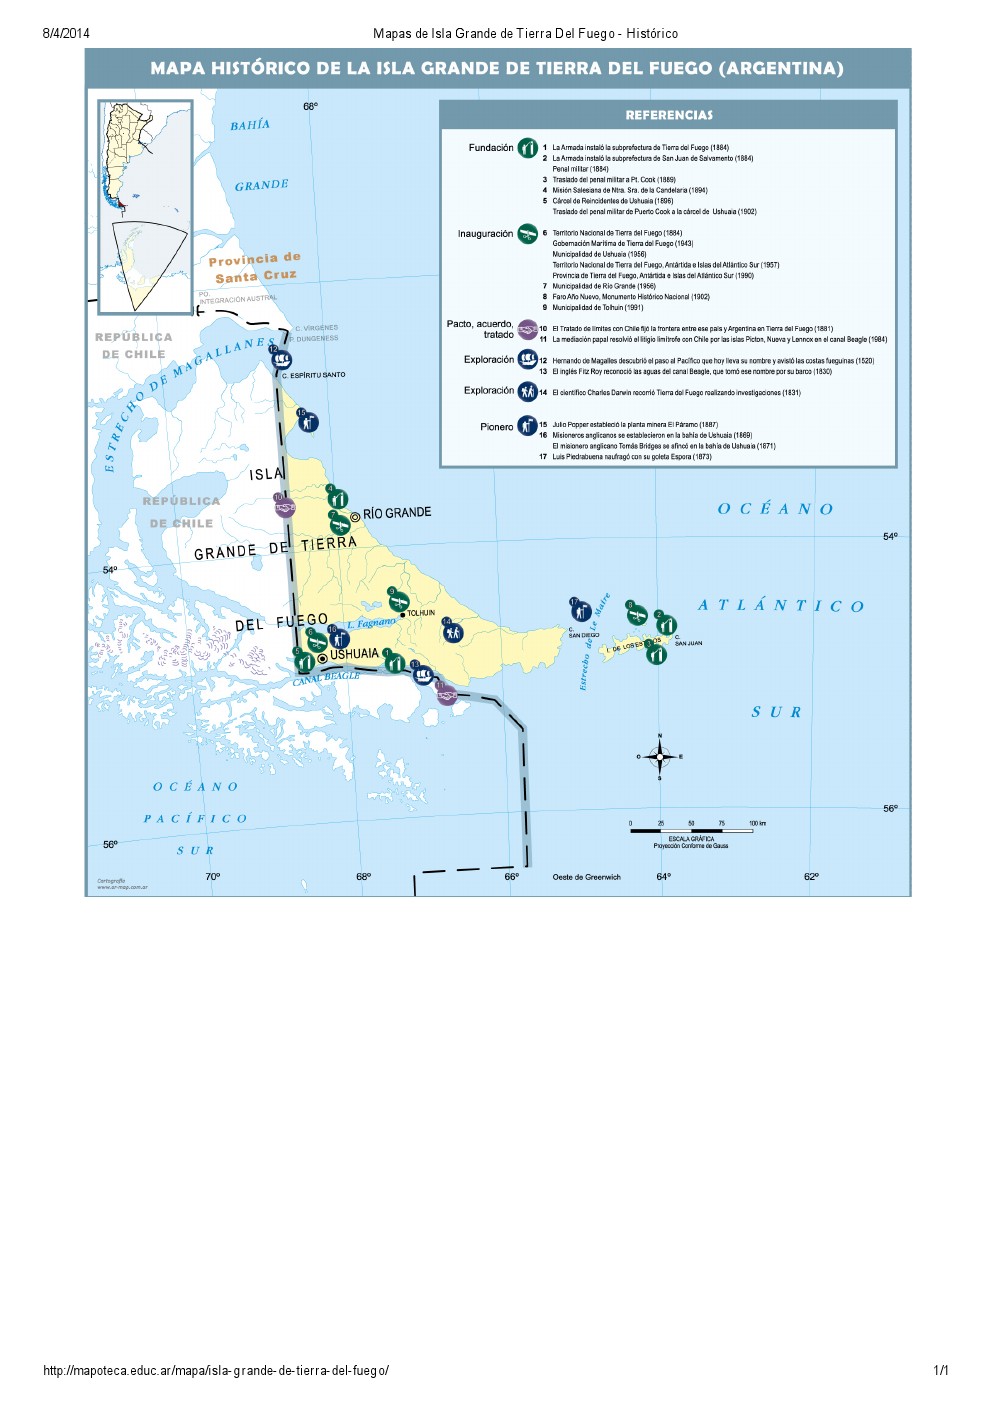 Mapa histórico de Isla Grande de Tierra del Fuego. Mapoteca de Educ.ar